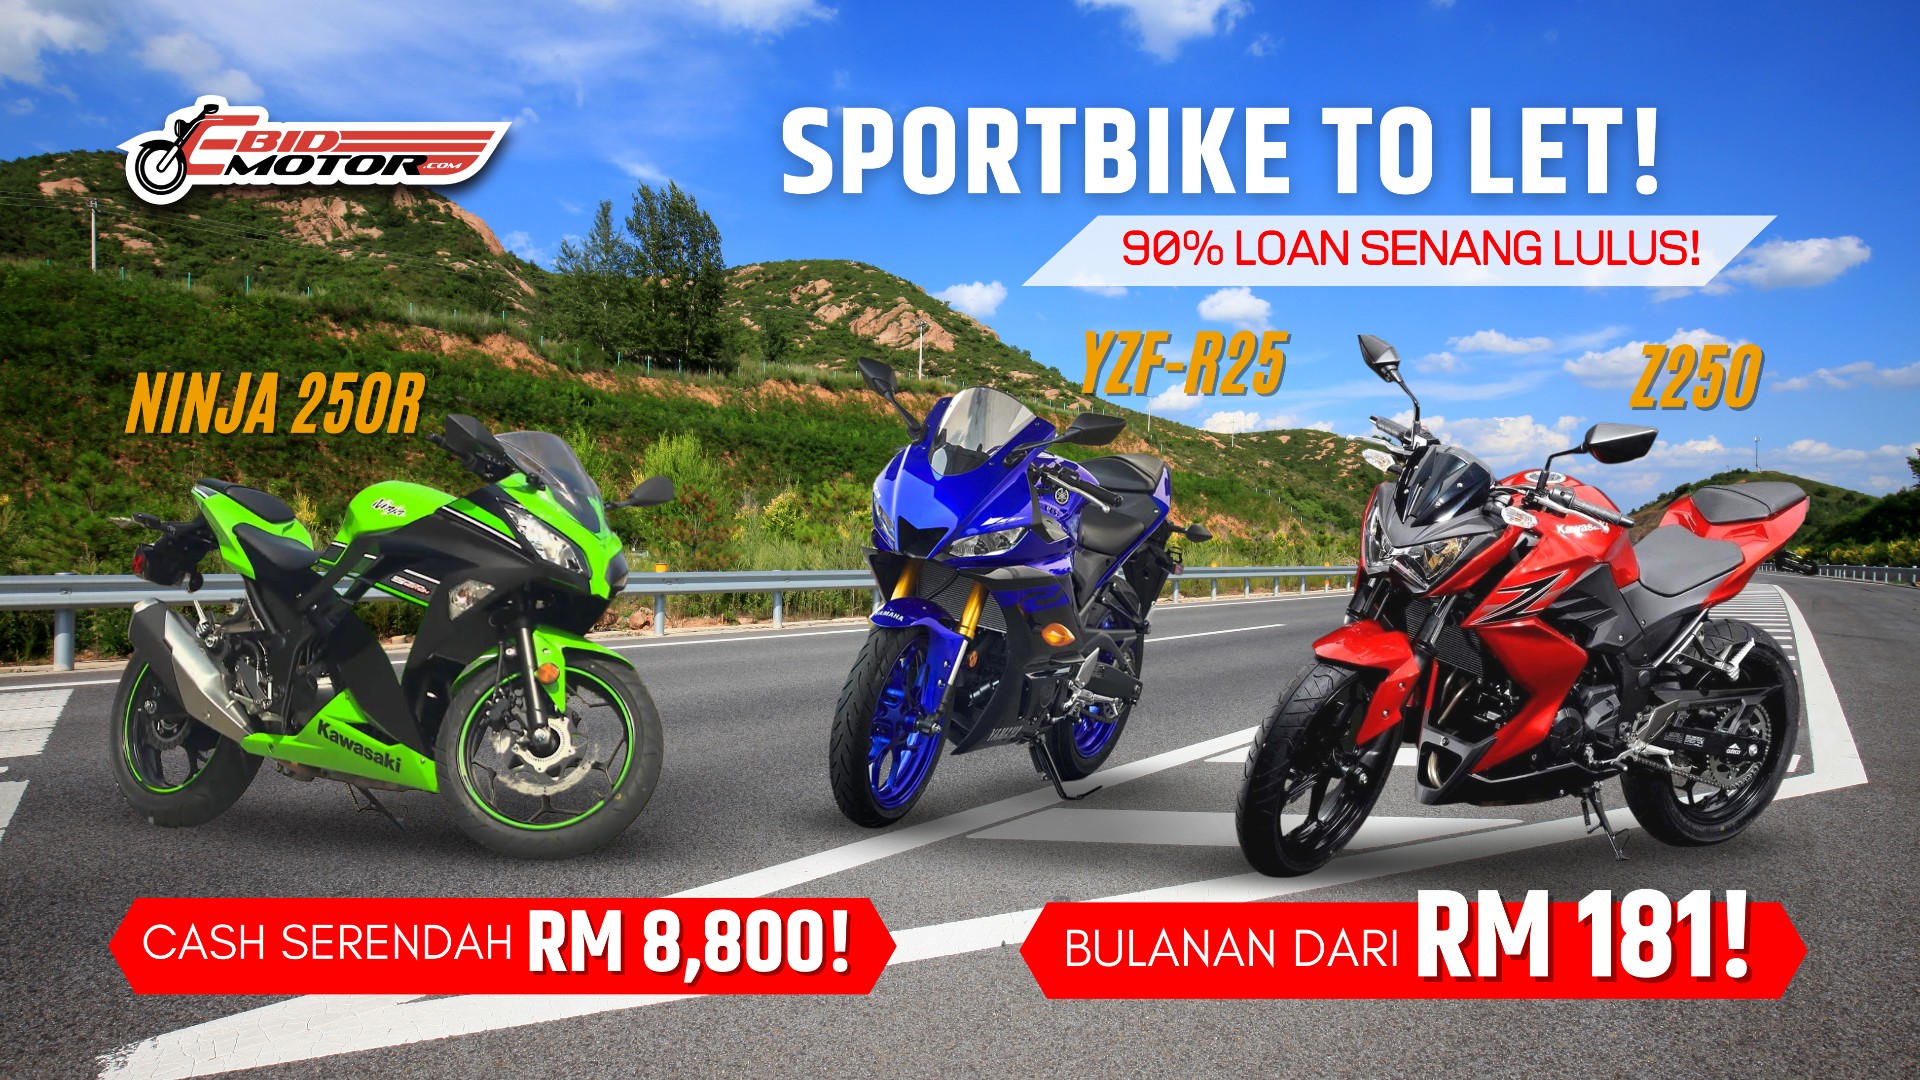 Sportbike 250cc To Let Paling Murah Di Lembah Klang! Bulanan Terendah Dijamin!